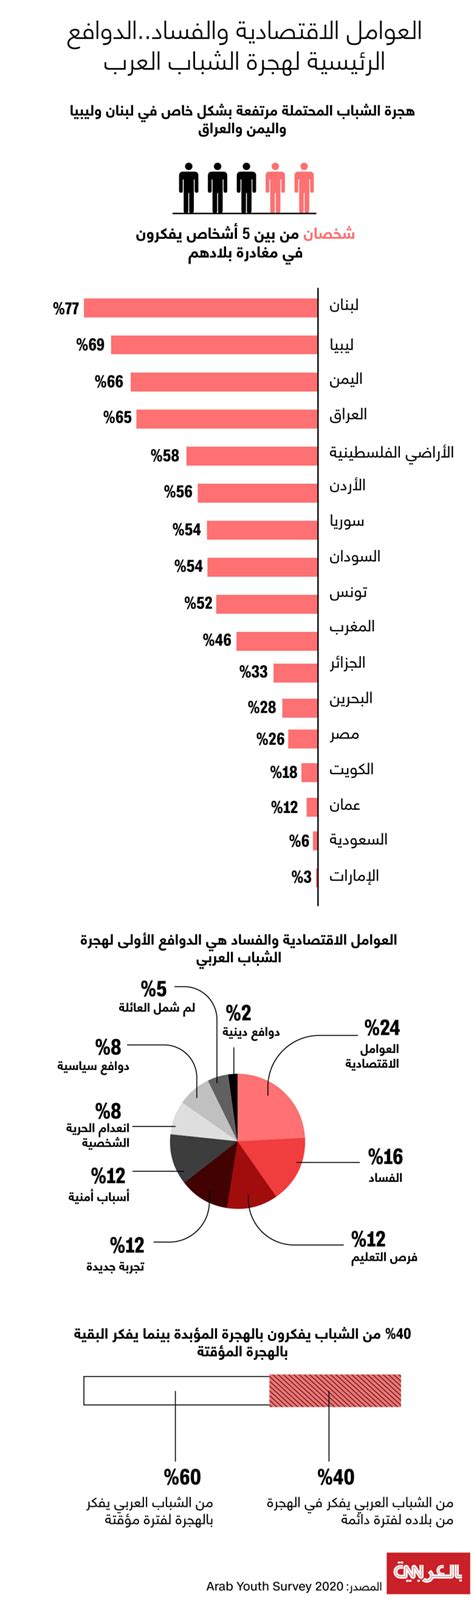 هذه نسبة إقبال الشباب العربي على الهجرة ما الذي يدفعه لذلك؟ Cnn Arabic